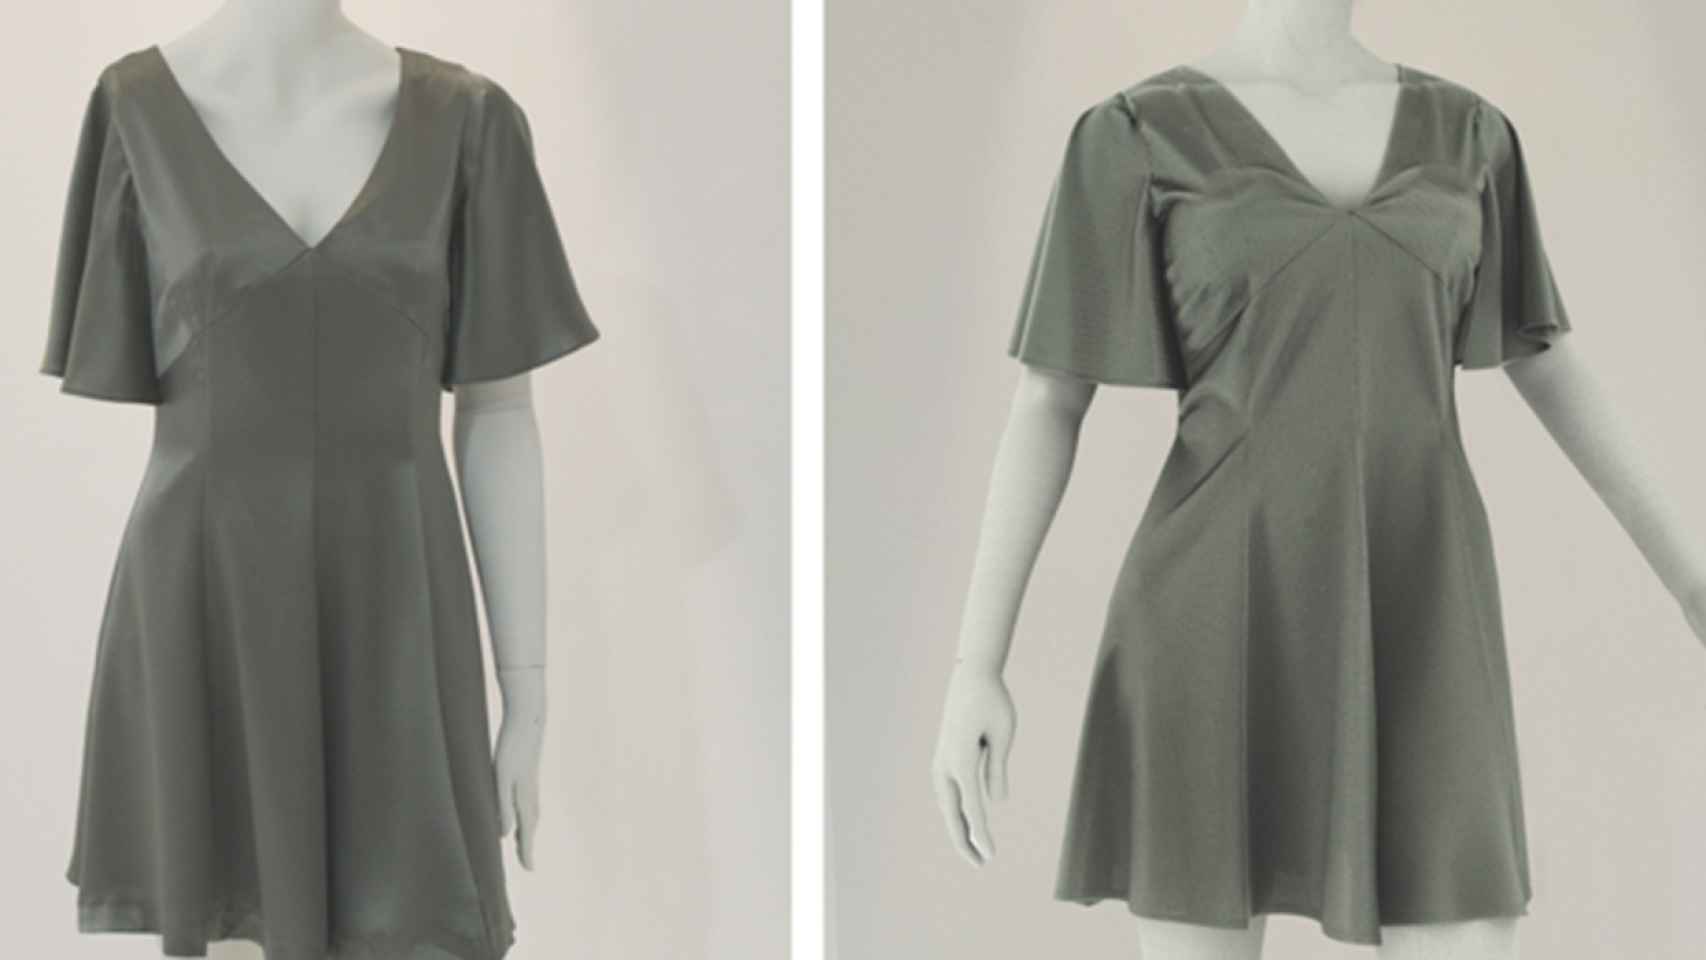 A la izquierda una imagen del vestido original y a la derecha la replica virtual.